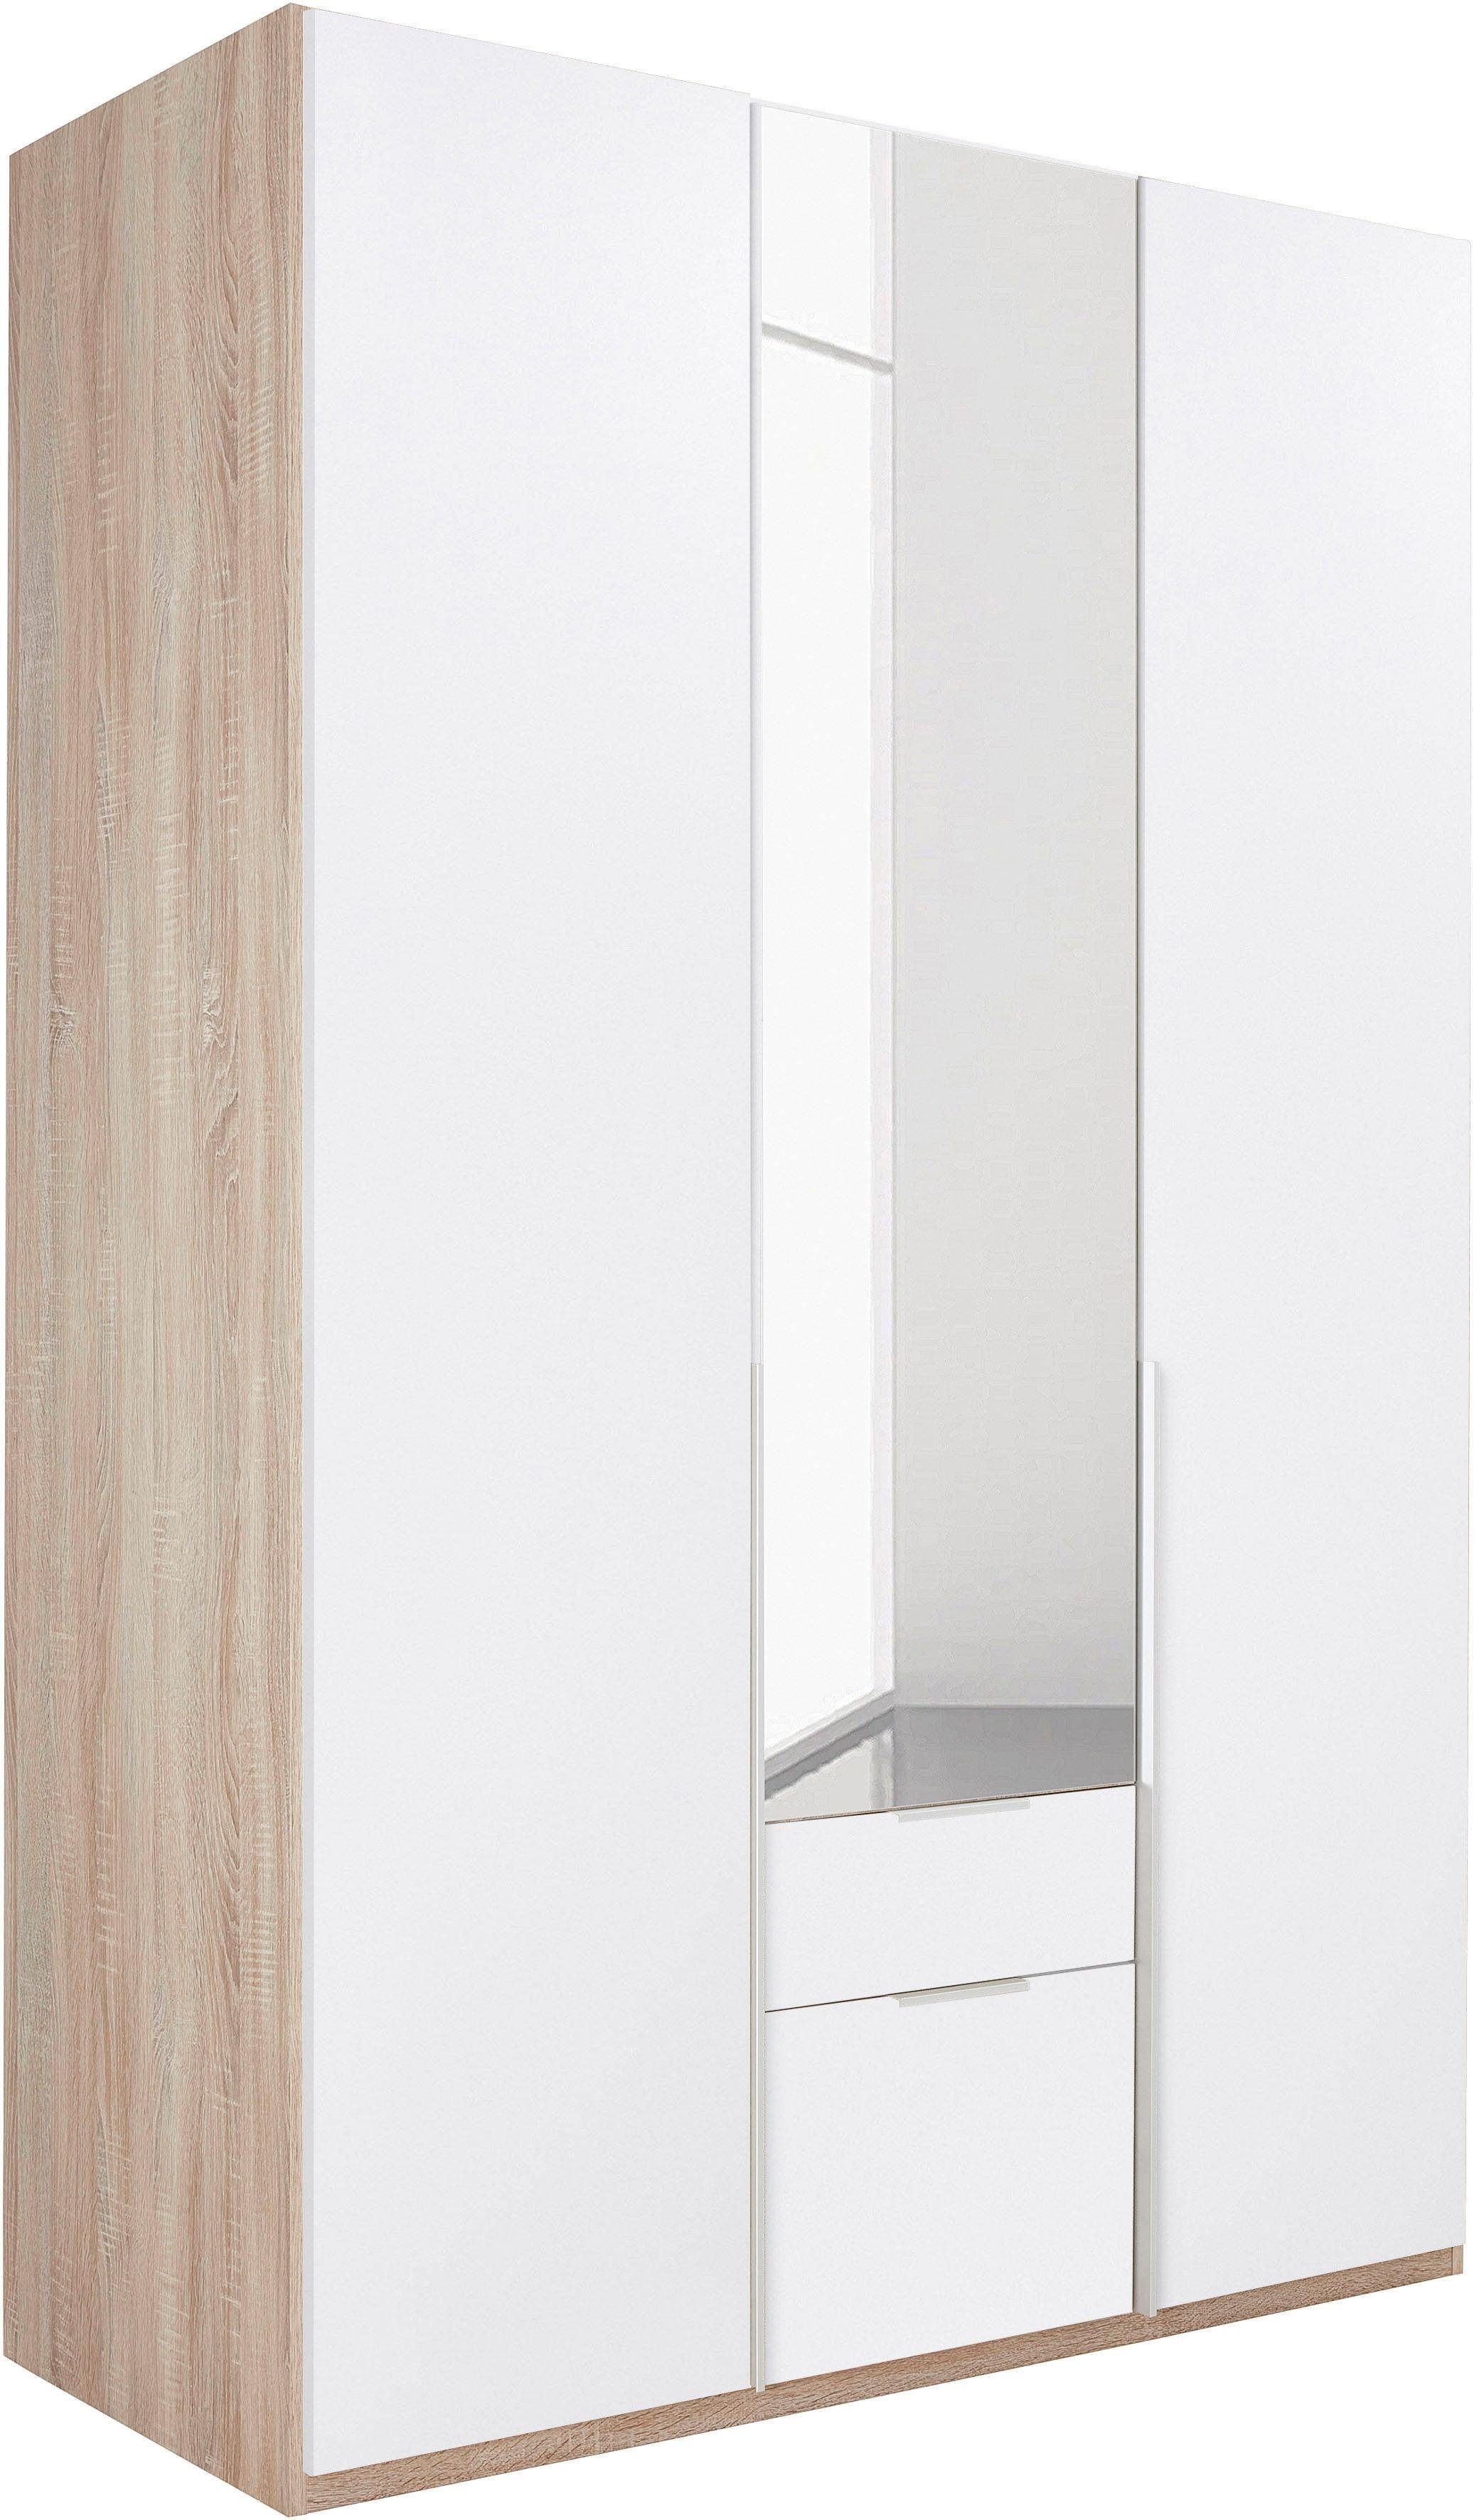 Wimex Kleiderschrank New York mit Spiegeltür struktureichefarben hell,weiß/Spiegel | Kleiderschränke